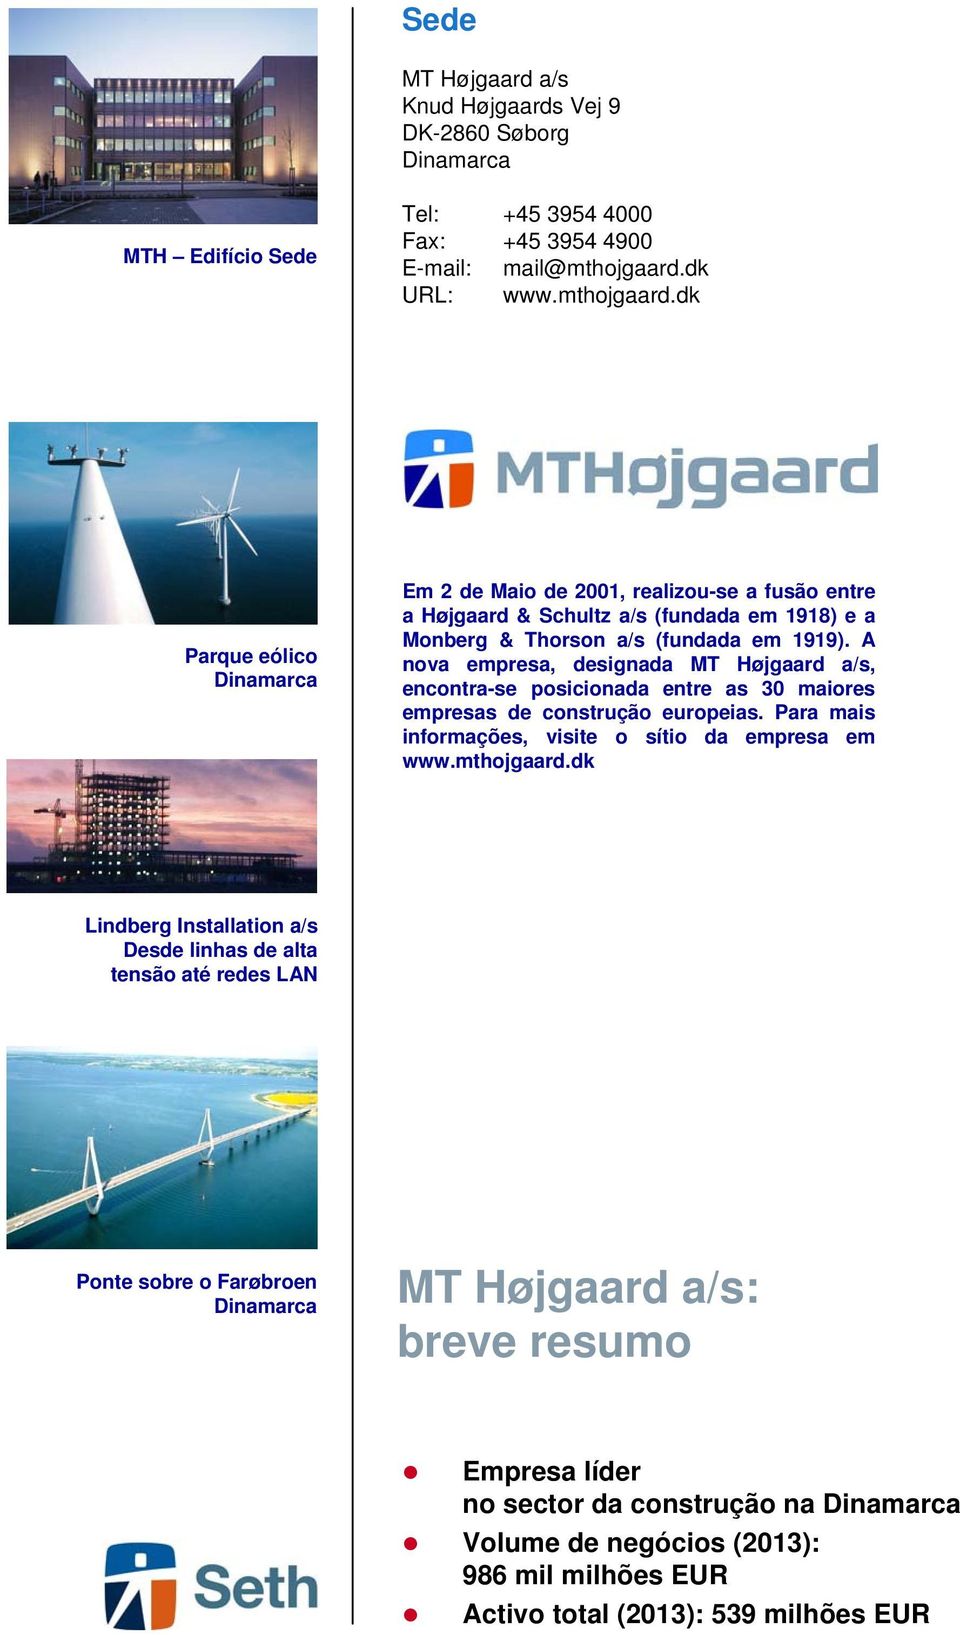 A nova empresa, designada MT Højgaard a/s, encontra-se posicionada entre as 30 maiores empresas de construção europeias. Para mais informações, visite o sítio da empresa em www.mthojgaard.